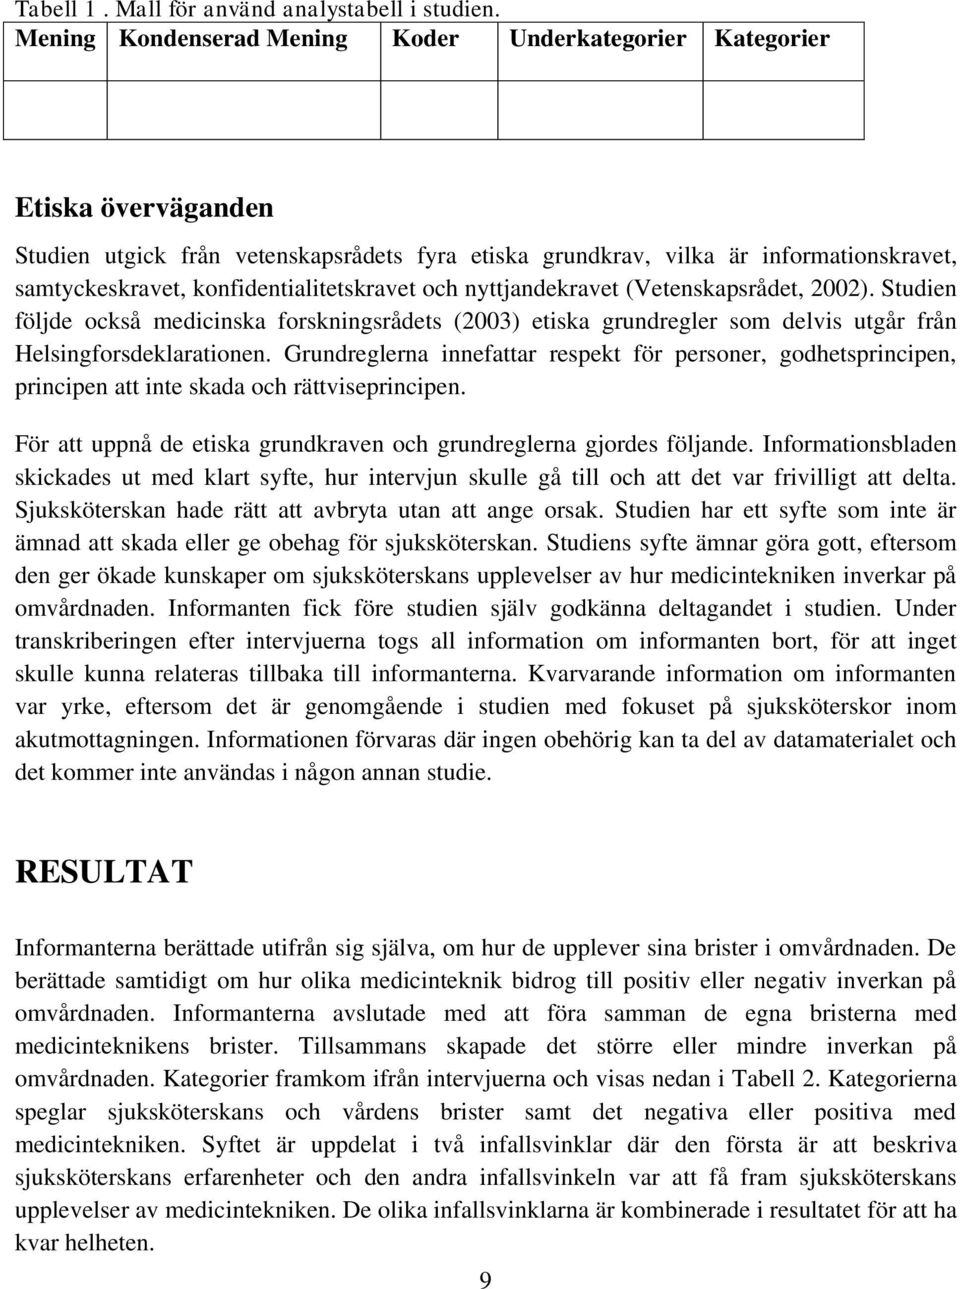 konfidentialitetskravet och nyttjandekravet (Vetenskapsrådet, 2002). Studien följde också medicinska forskningsrådets (2003) etiska grundregler som delvis utgår från Helsingforsdeklarationen.